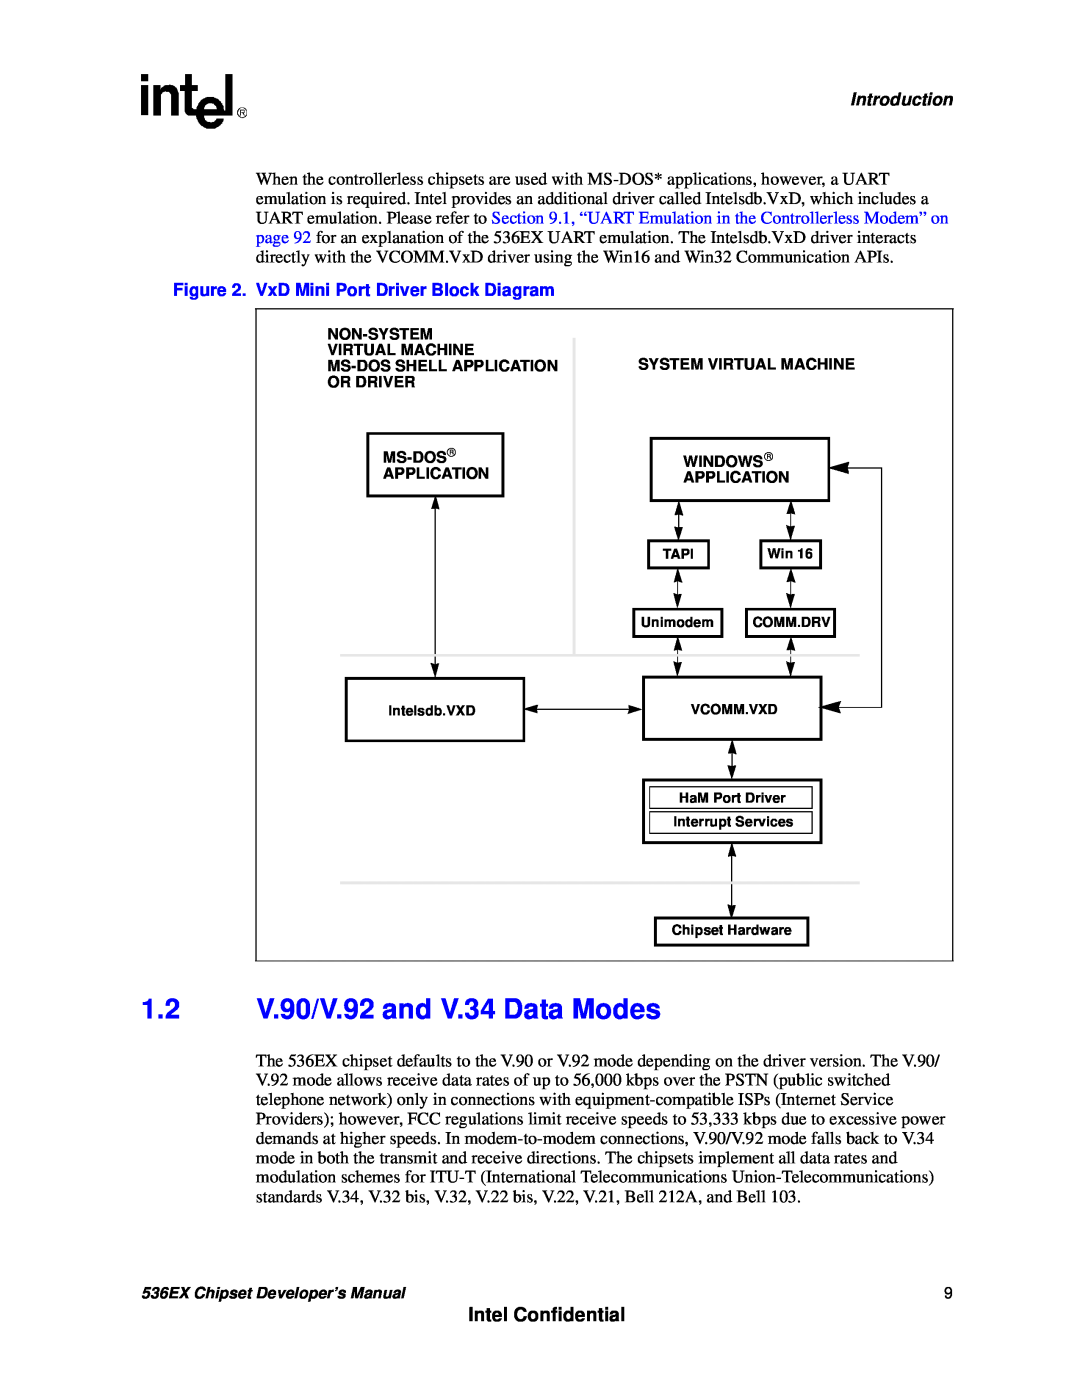 Intel 536EX manual 1.2V.90/V.92 and V.34 Data Modes, Intel Confidential, Introduction, VxD Mini Port Driver Block Diagram 